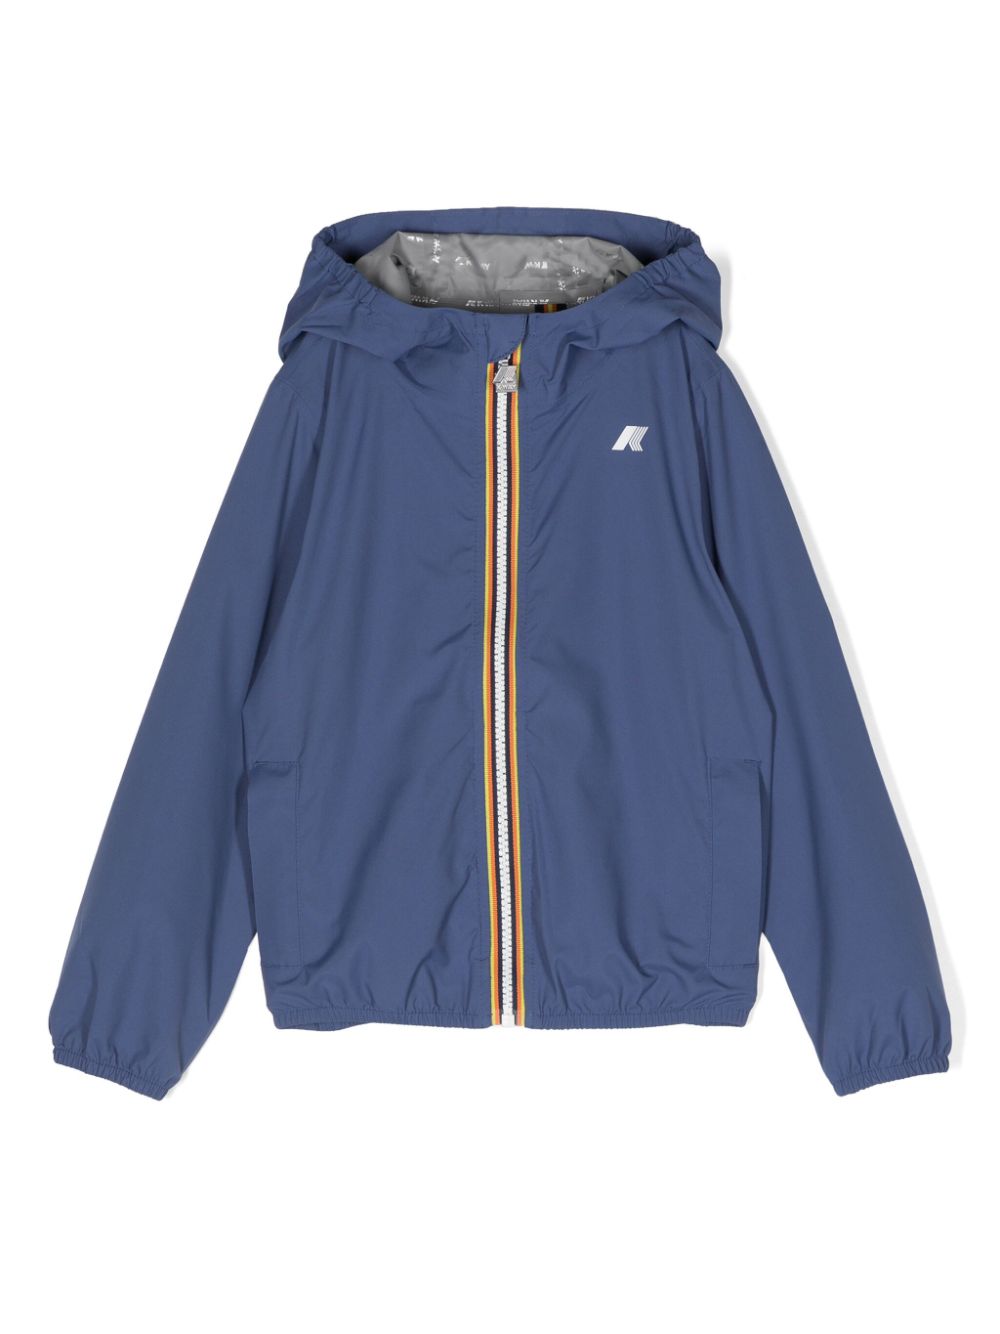 K Way Kids P. Jack hooded rain jacket - Blau